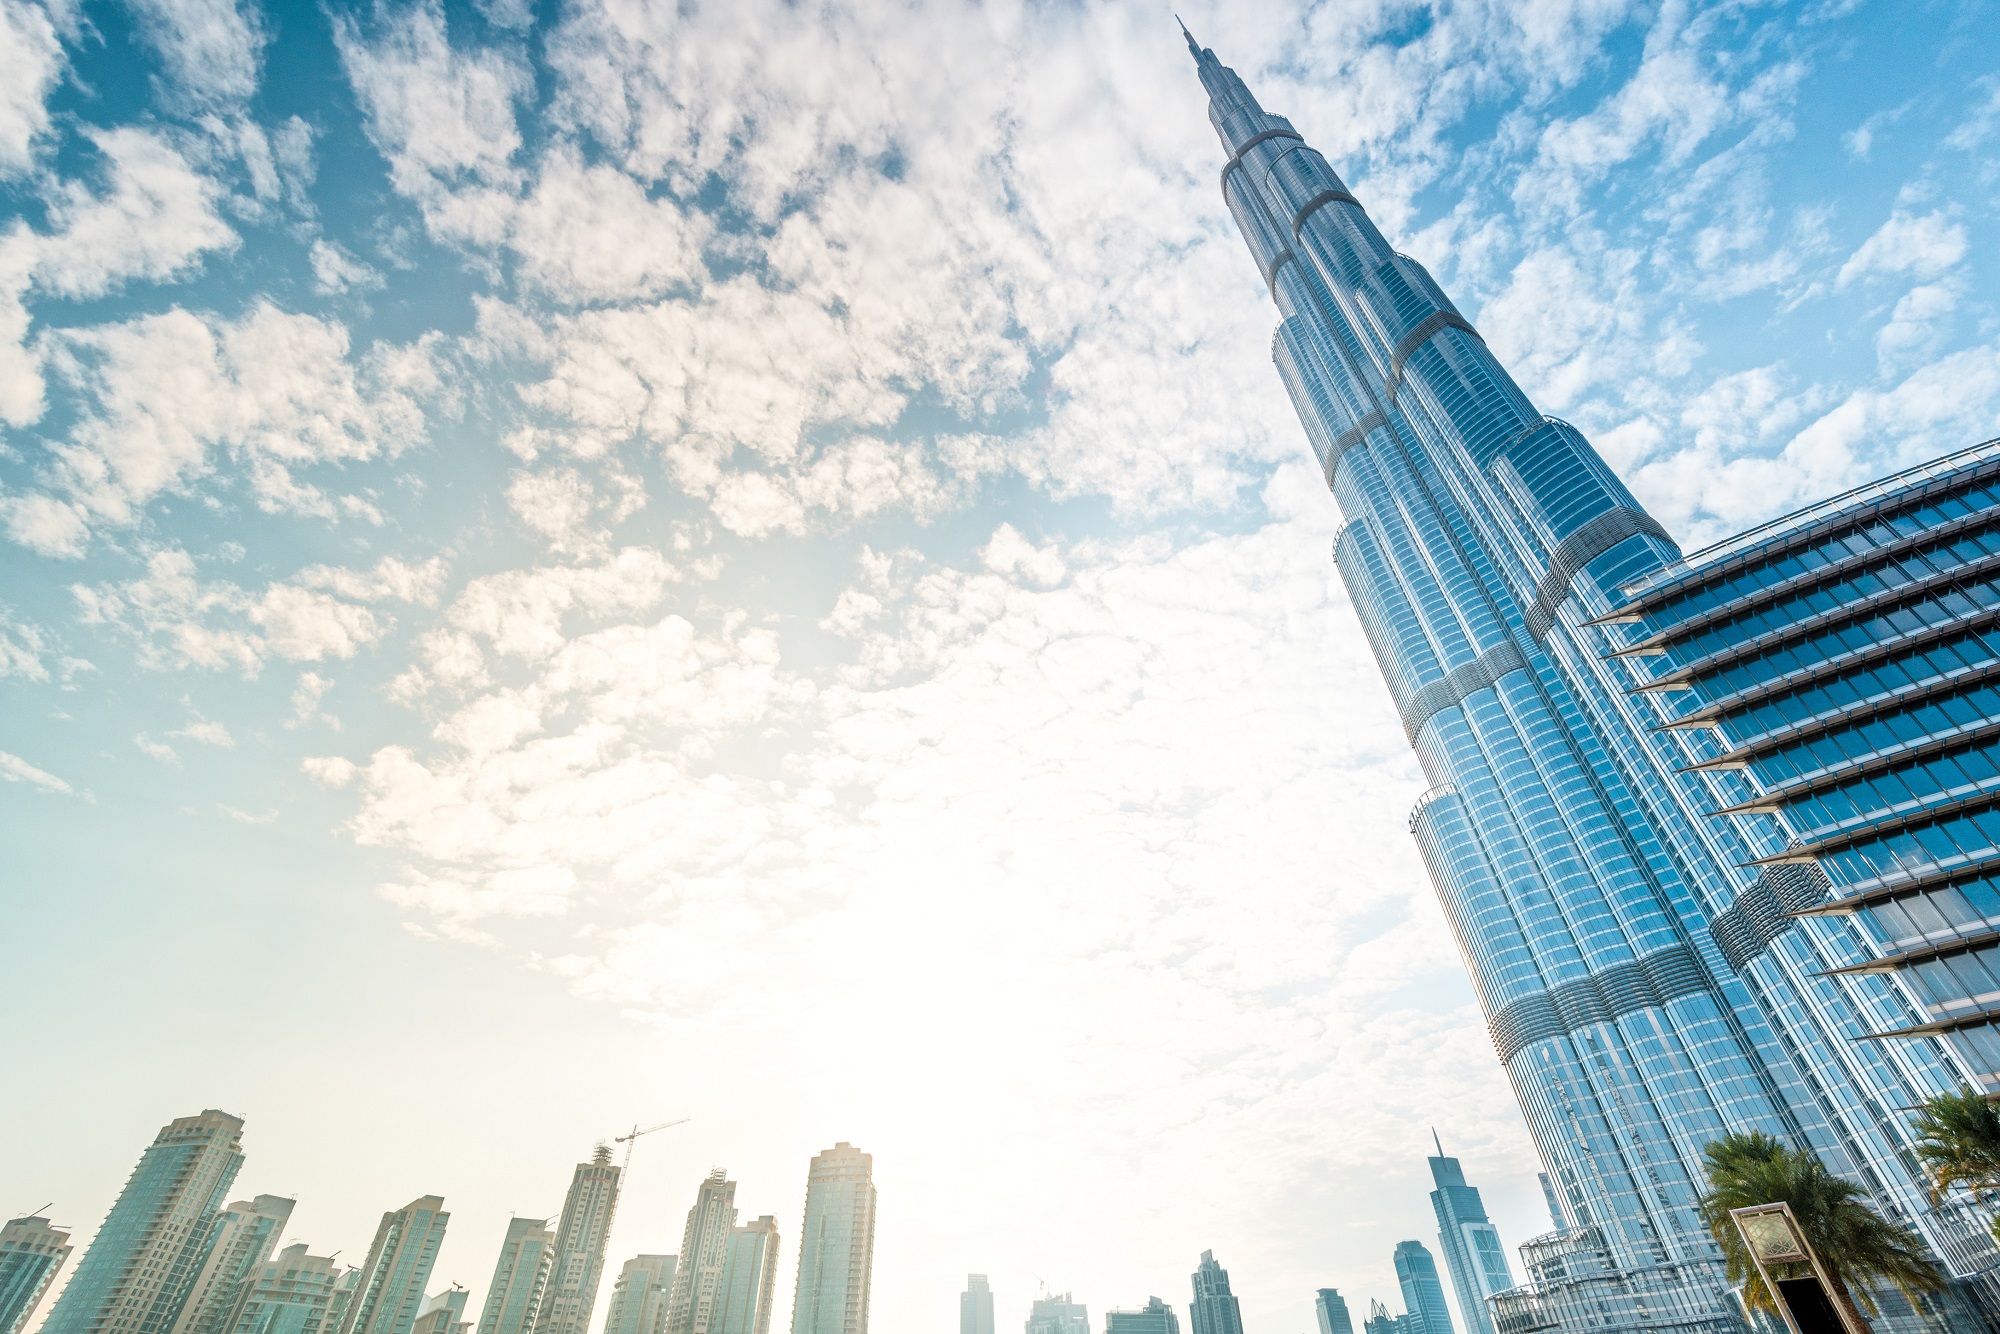 4. Burj Khalifa